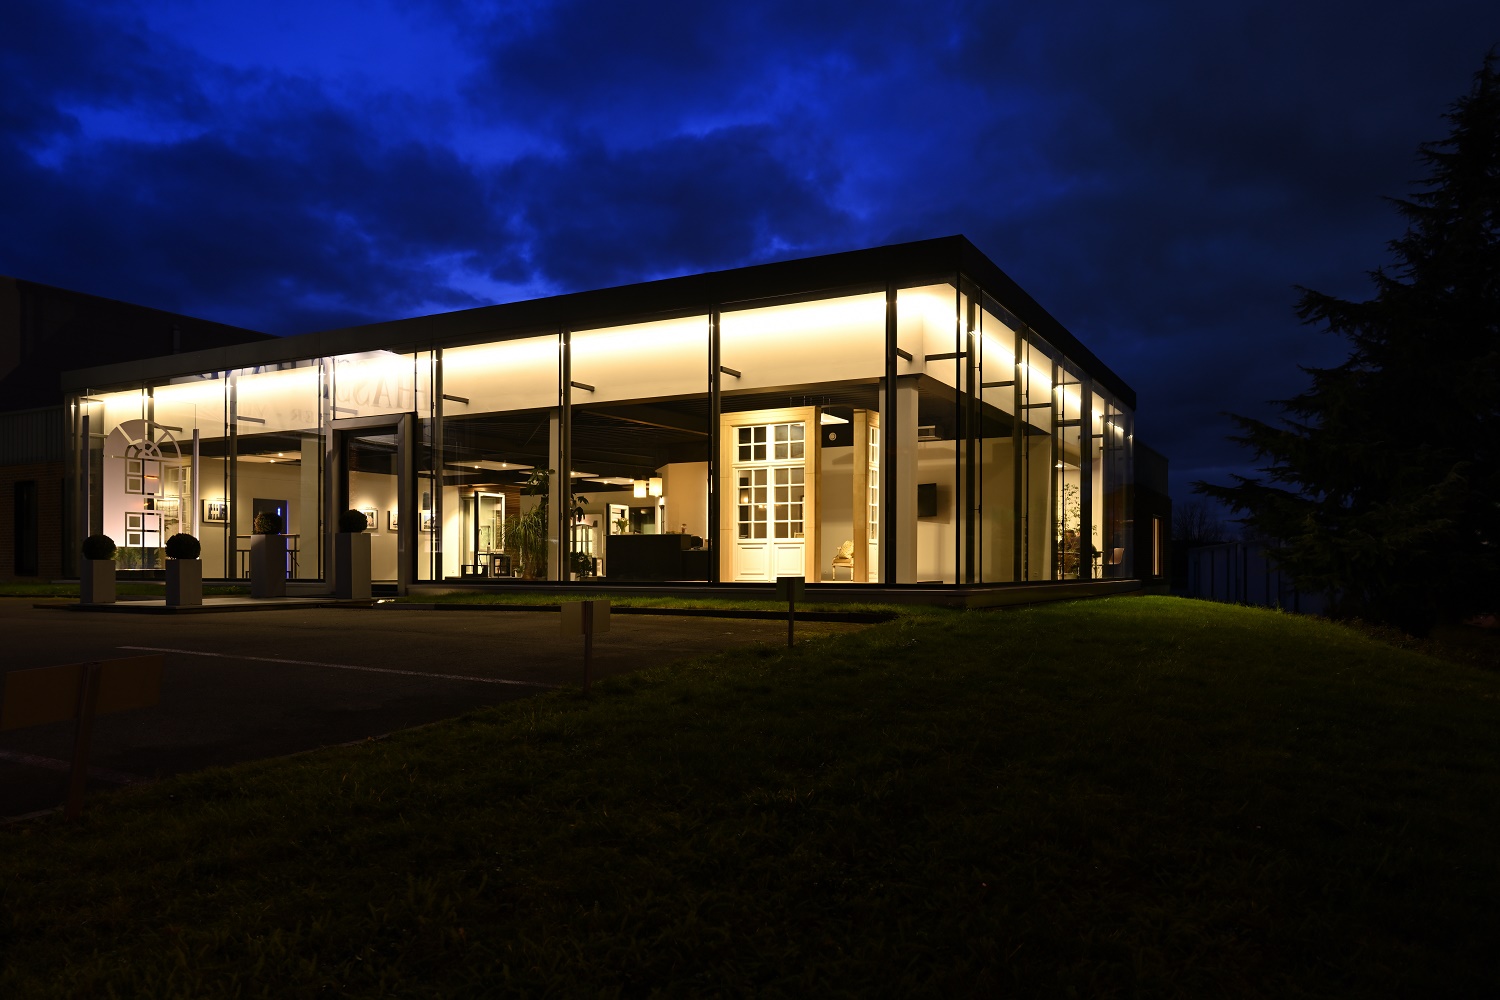 Hanin dispose d'un site commerciale et d'un atelier de production de portes et fenêtres en PVC, Aluminium et Acier, à Marche-en-Famenne